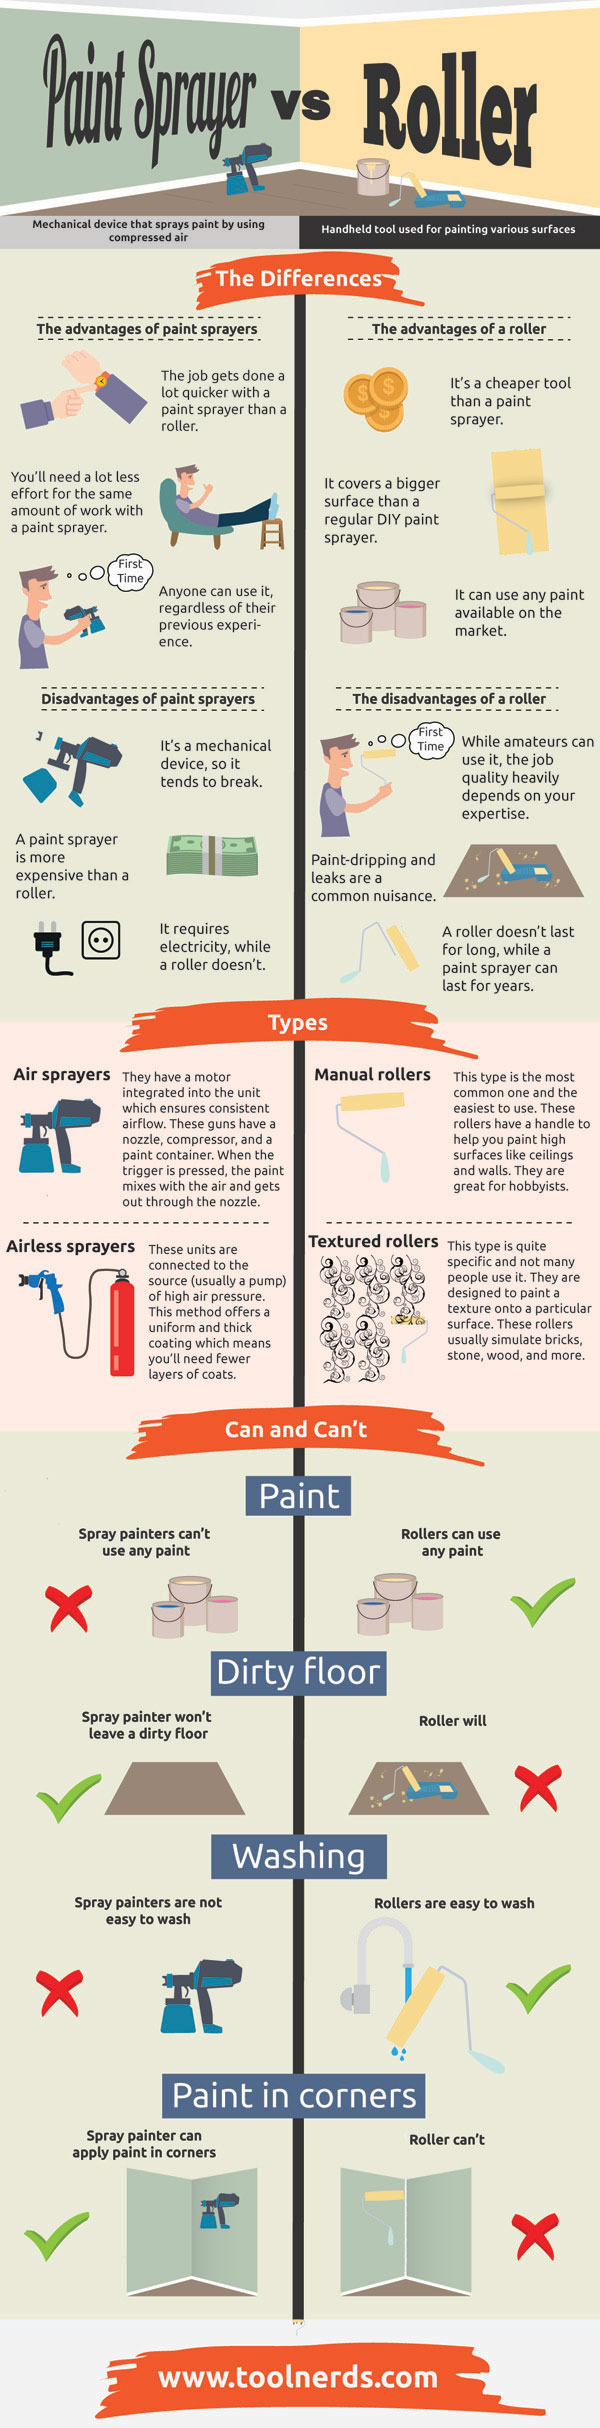 Paint sprayer vs roller